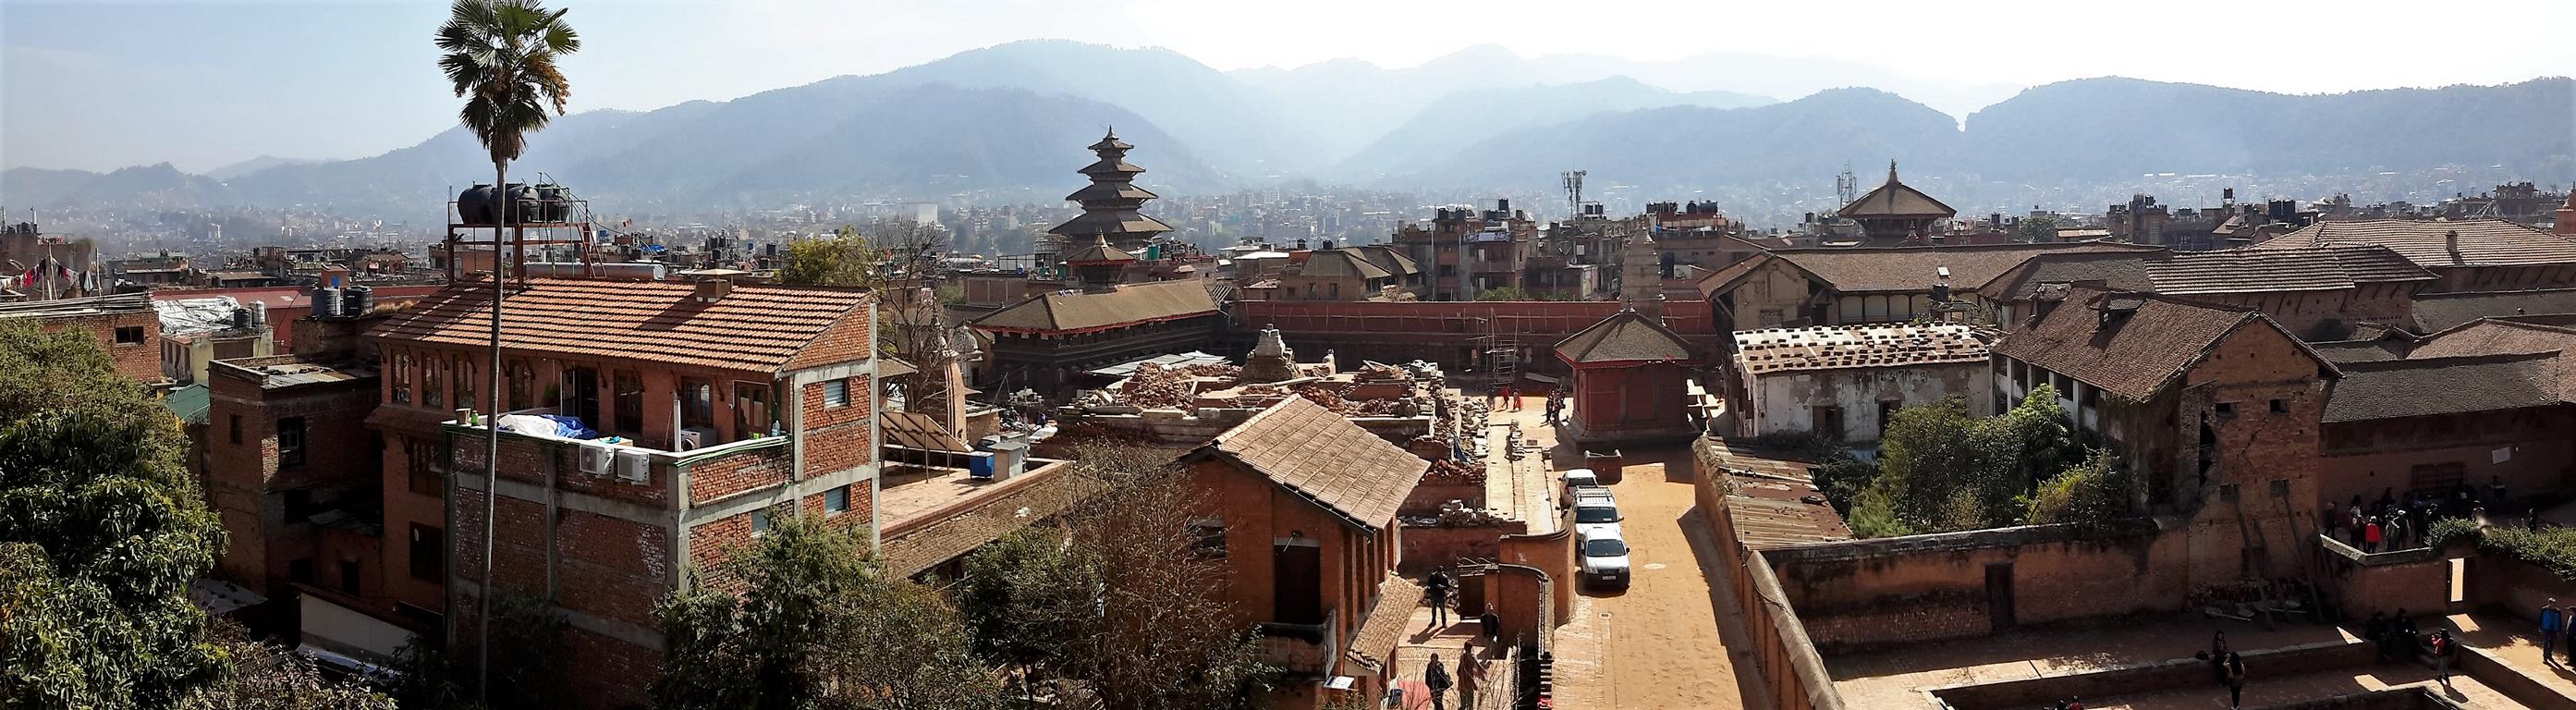 Blick auf einen der Plätze von Bhaktapur